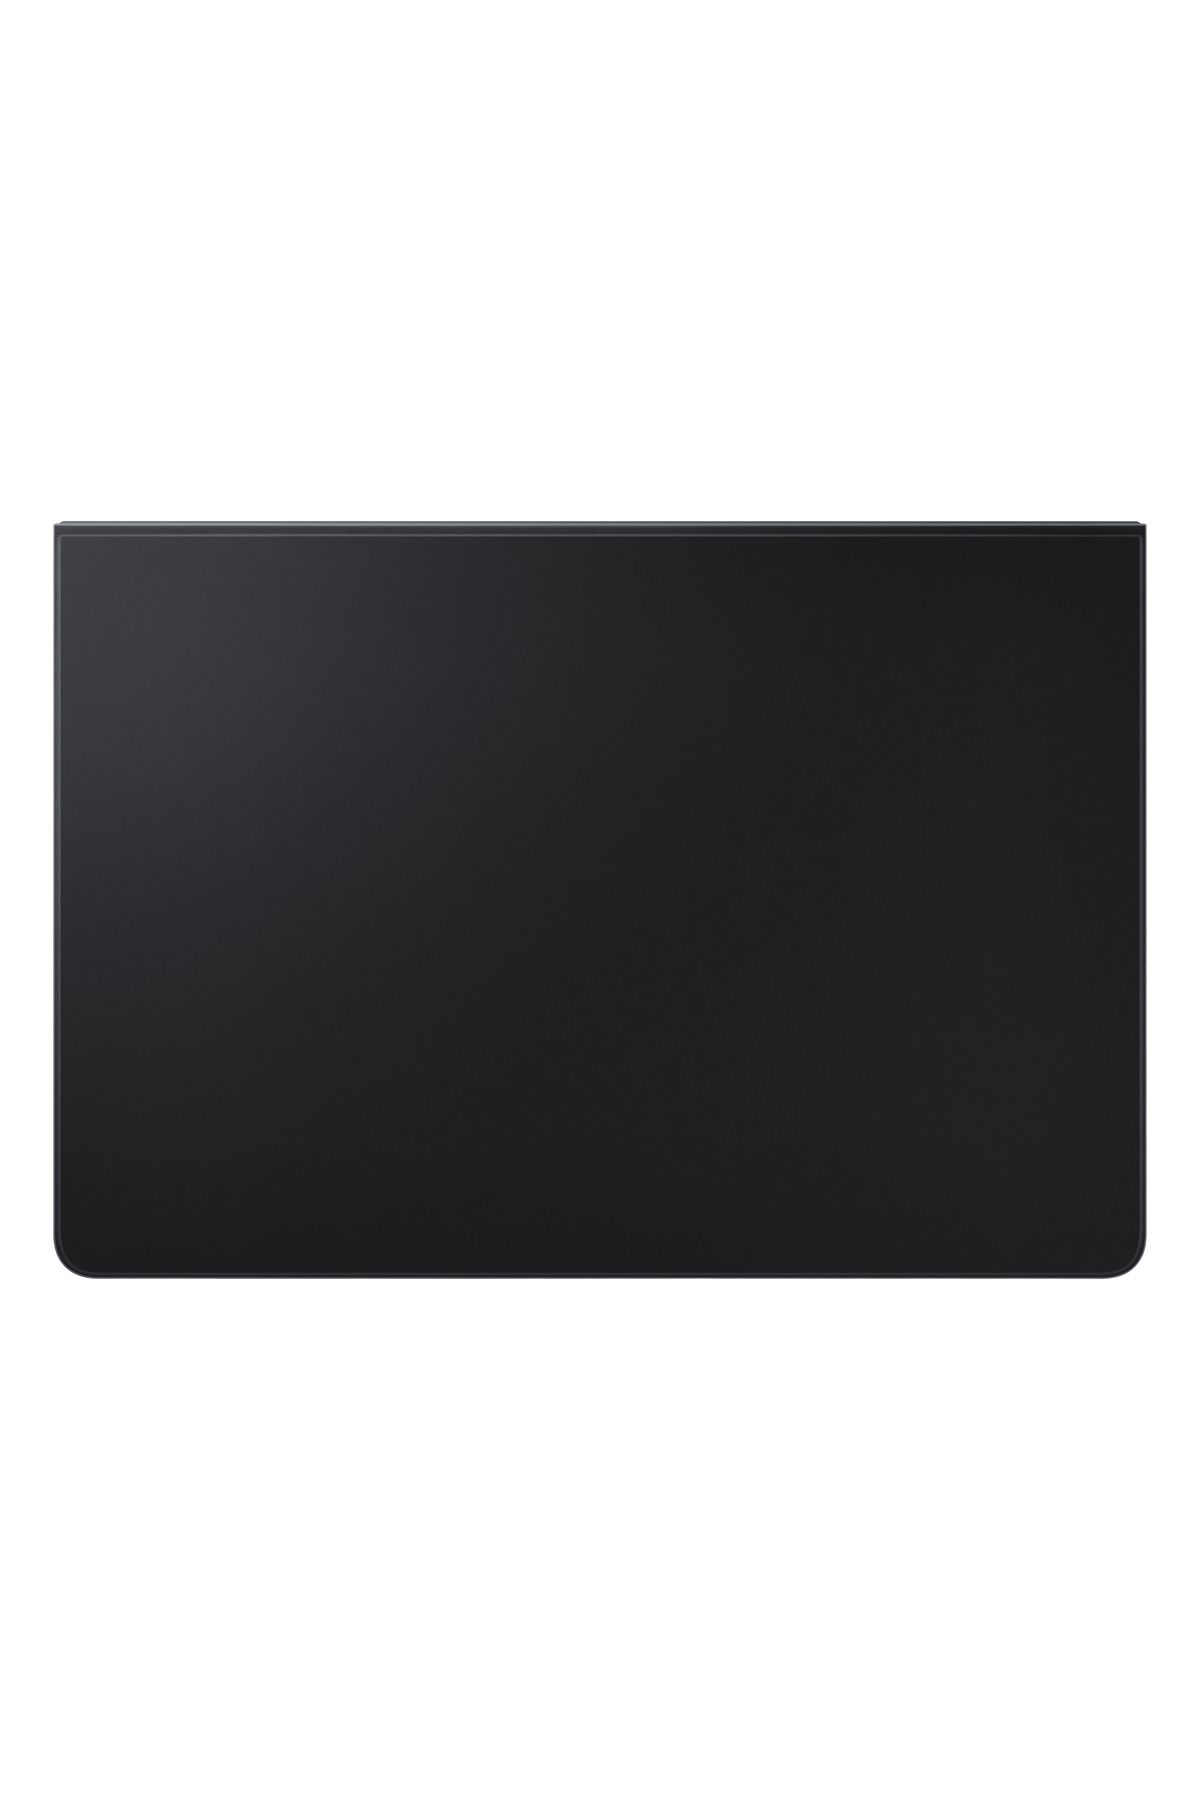 Samsung Galaxy Tab S7 Ince Klavyeli Tablet Kılıfı Siyah